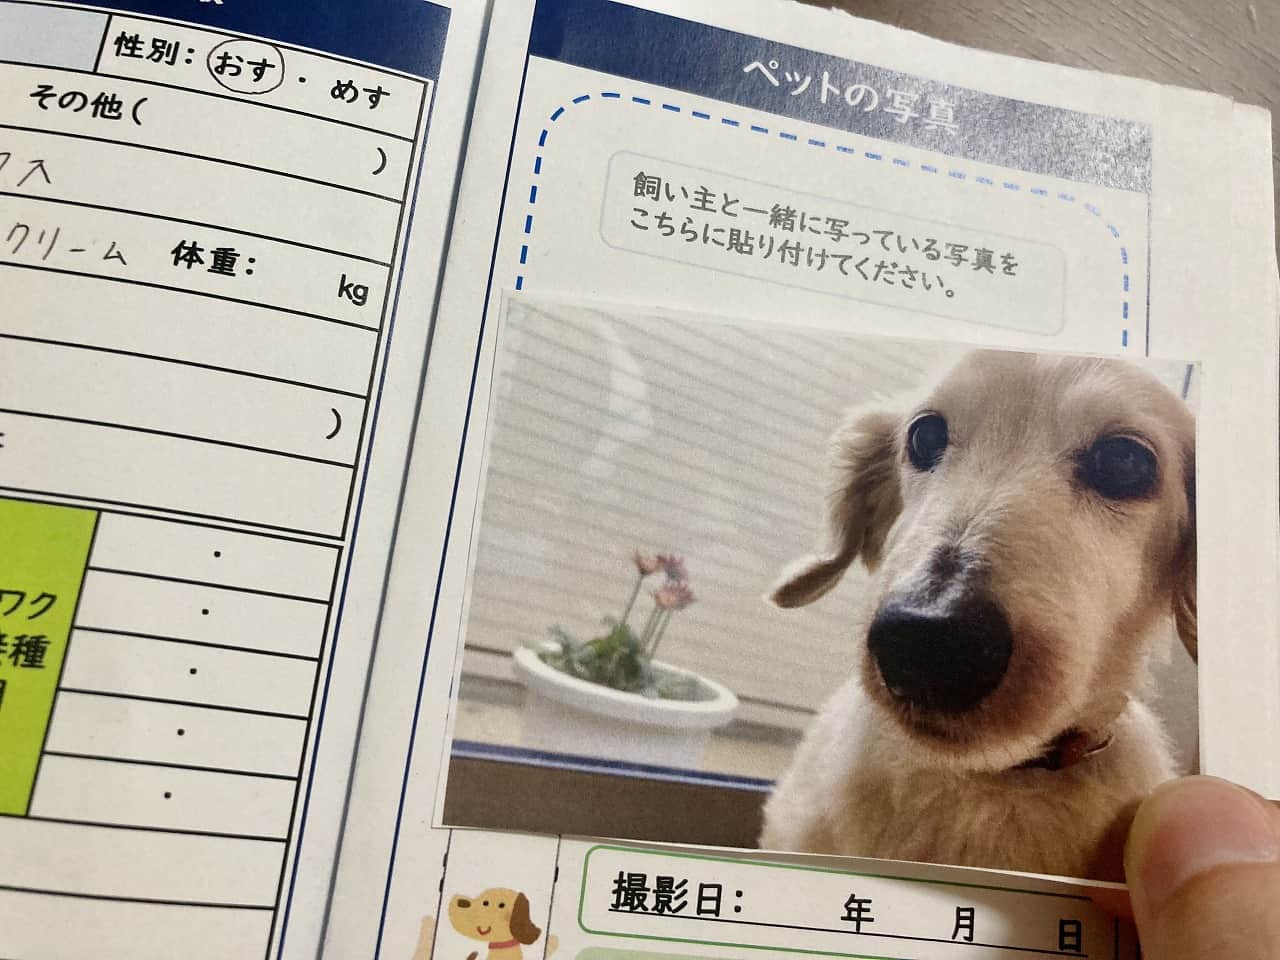 【実践】米子市から「ペット防災手帳」が出てたので早速作ってみたよ｜日刊Lazuda(ラズダ) 島根・鳥取を知る